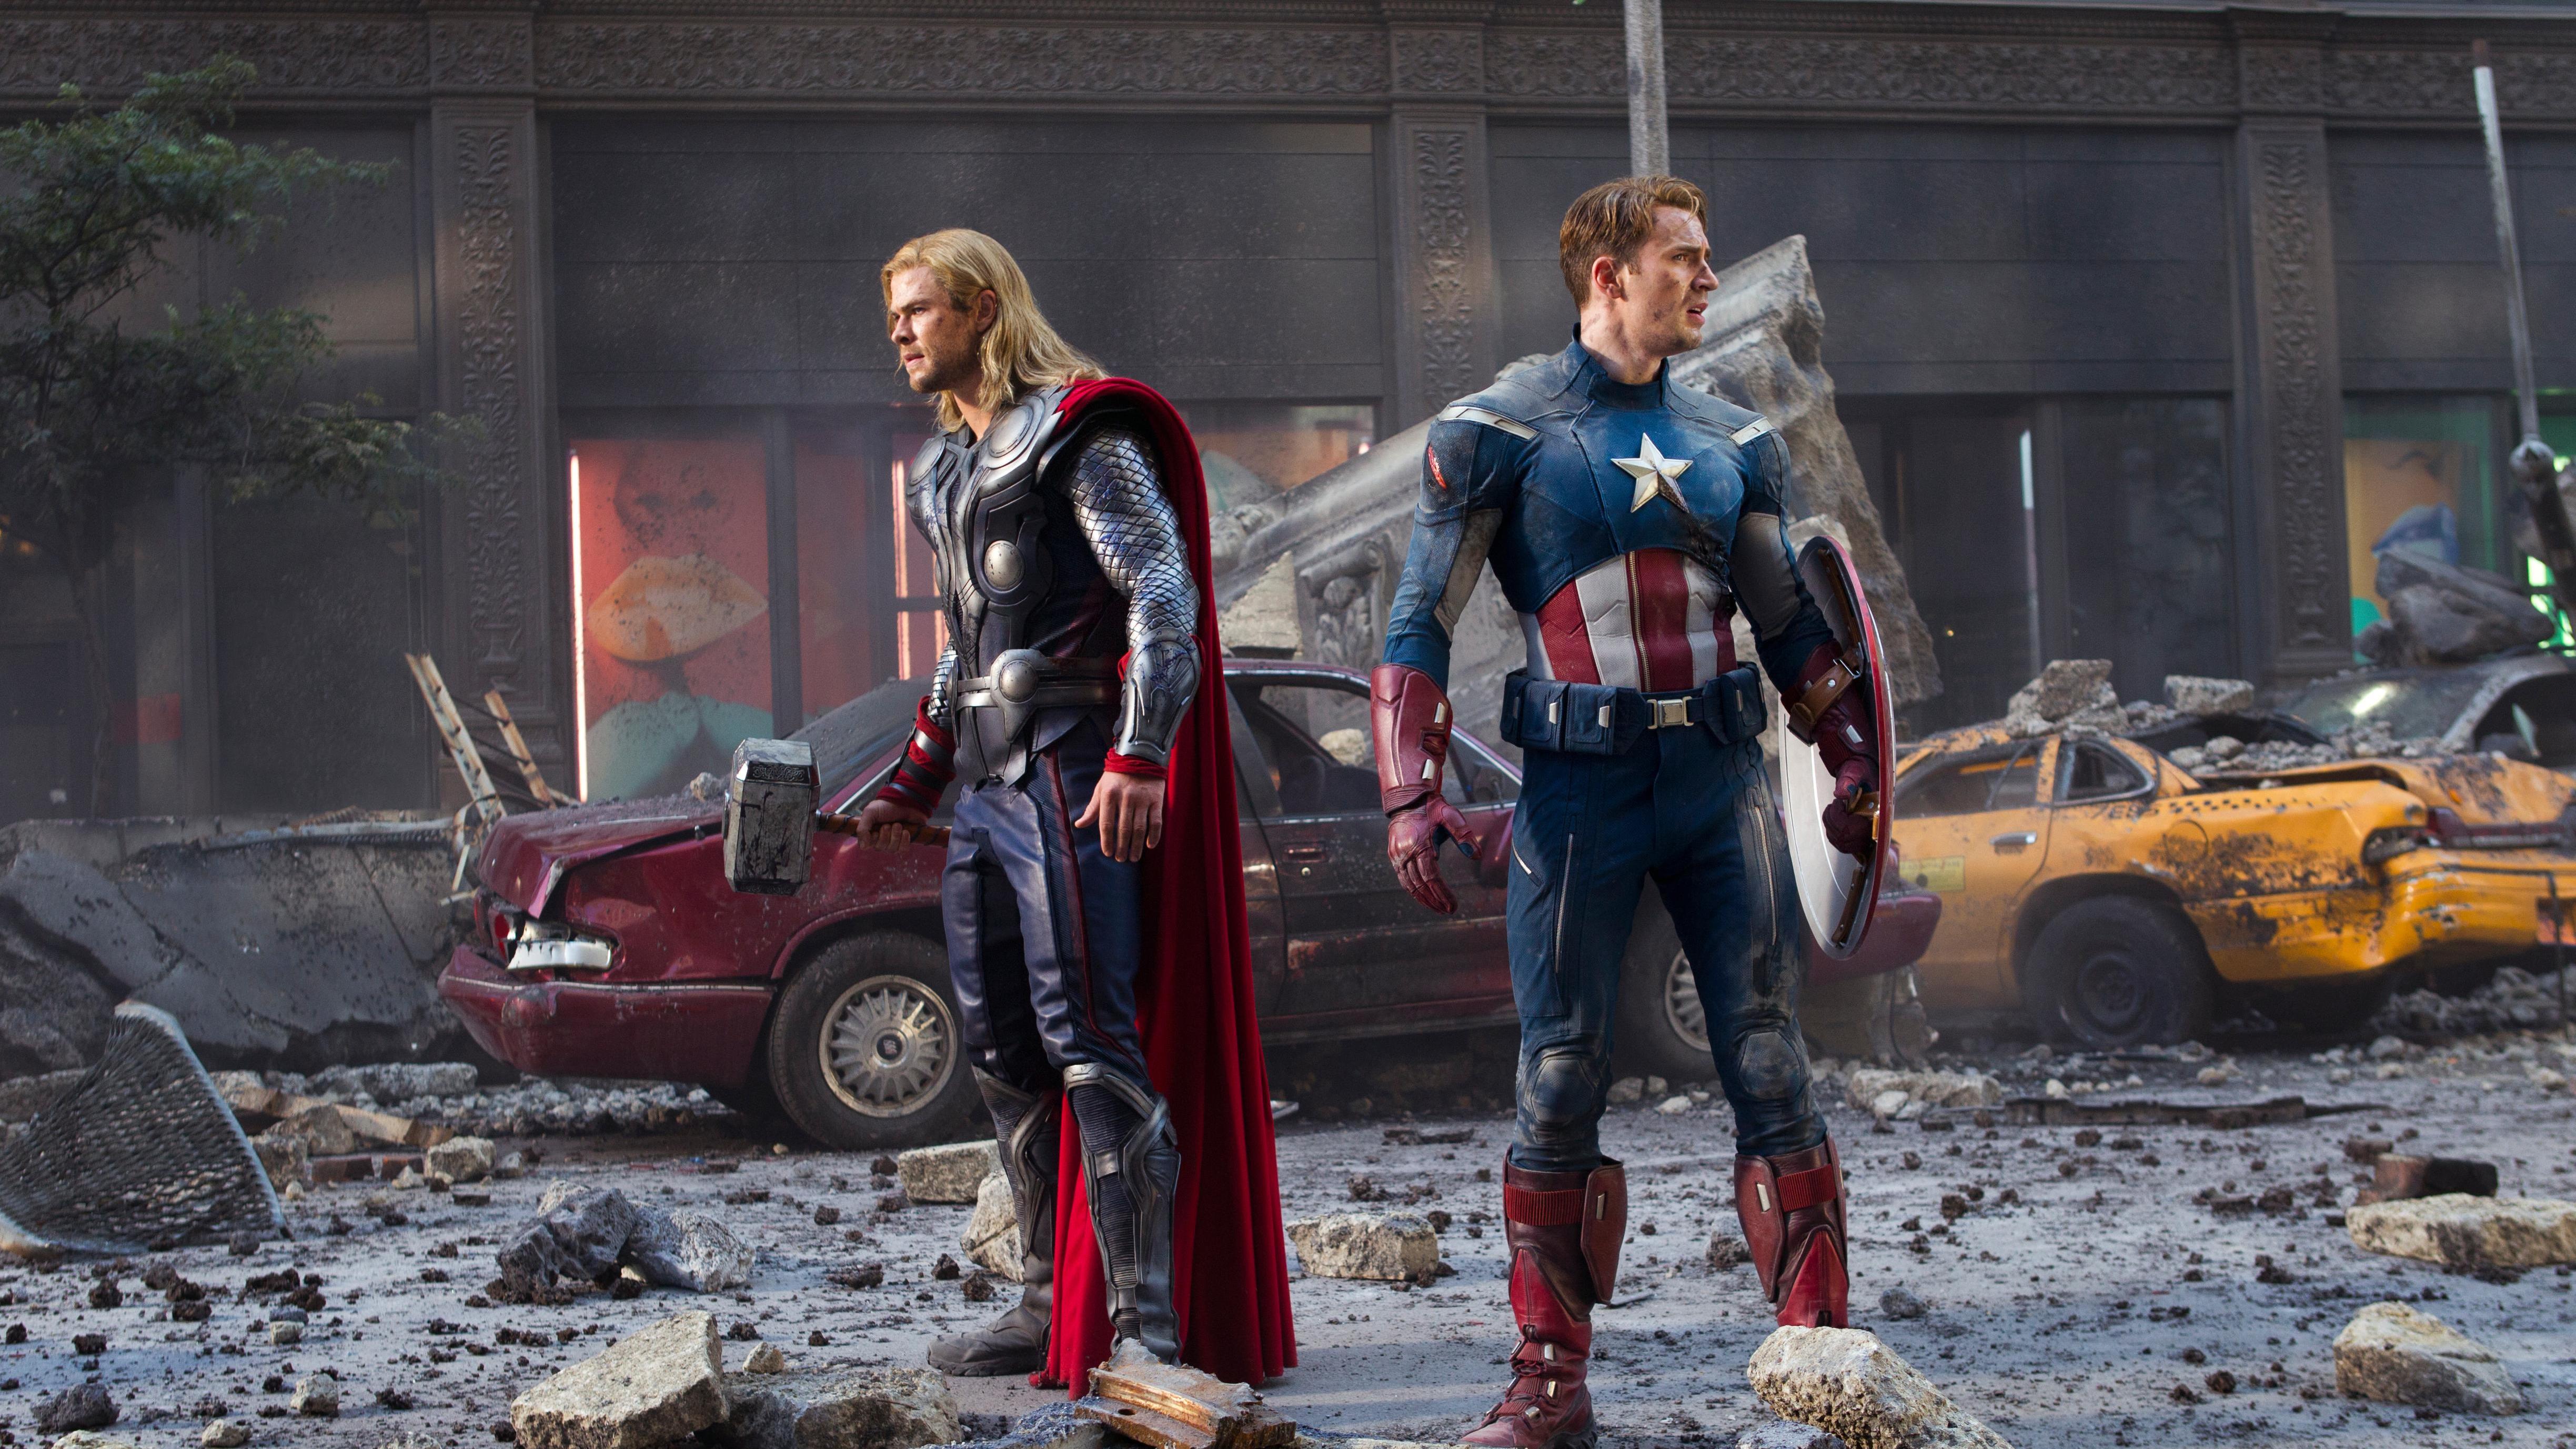 Captain America Avengers Assemble Film - 4896x2754 Wallpaper 